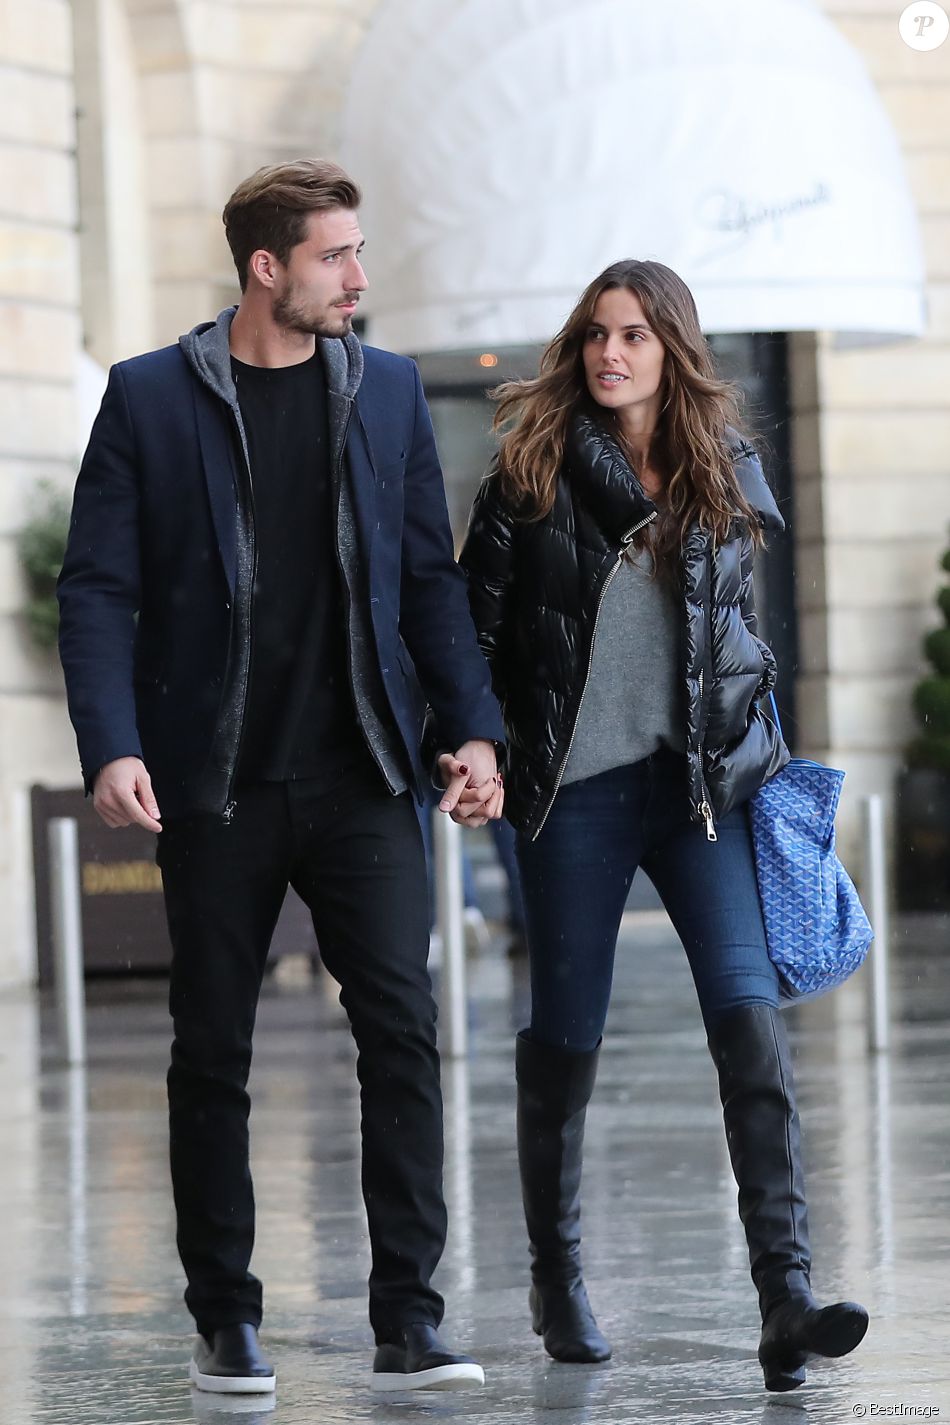 Kevin Trapp et Izabel Goulart se promenant en amoureux place Vendôme, où ils sont entrés dans la boutique du joaillier Damiani, le 21 octobre 2016 à Paris.